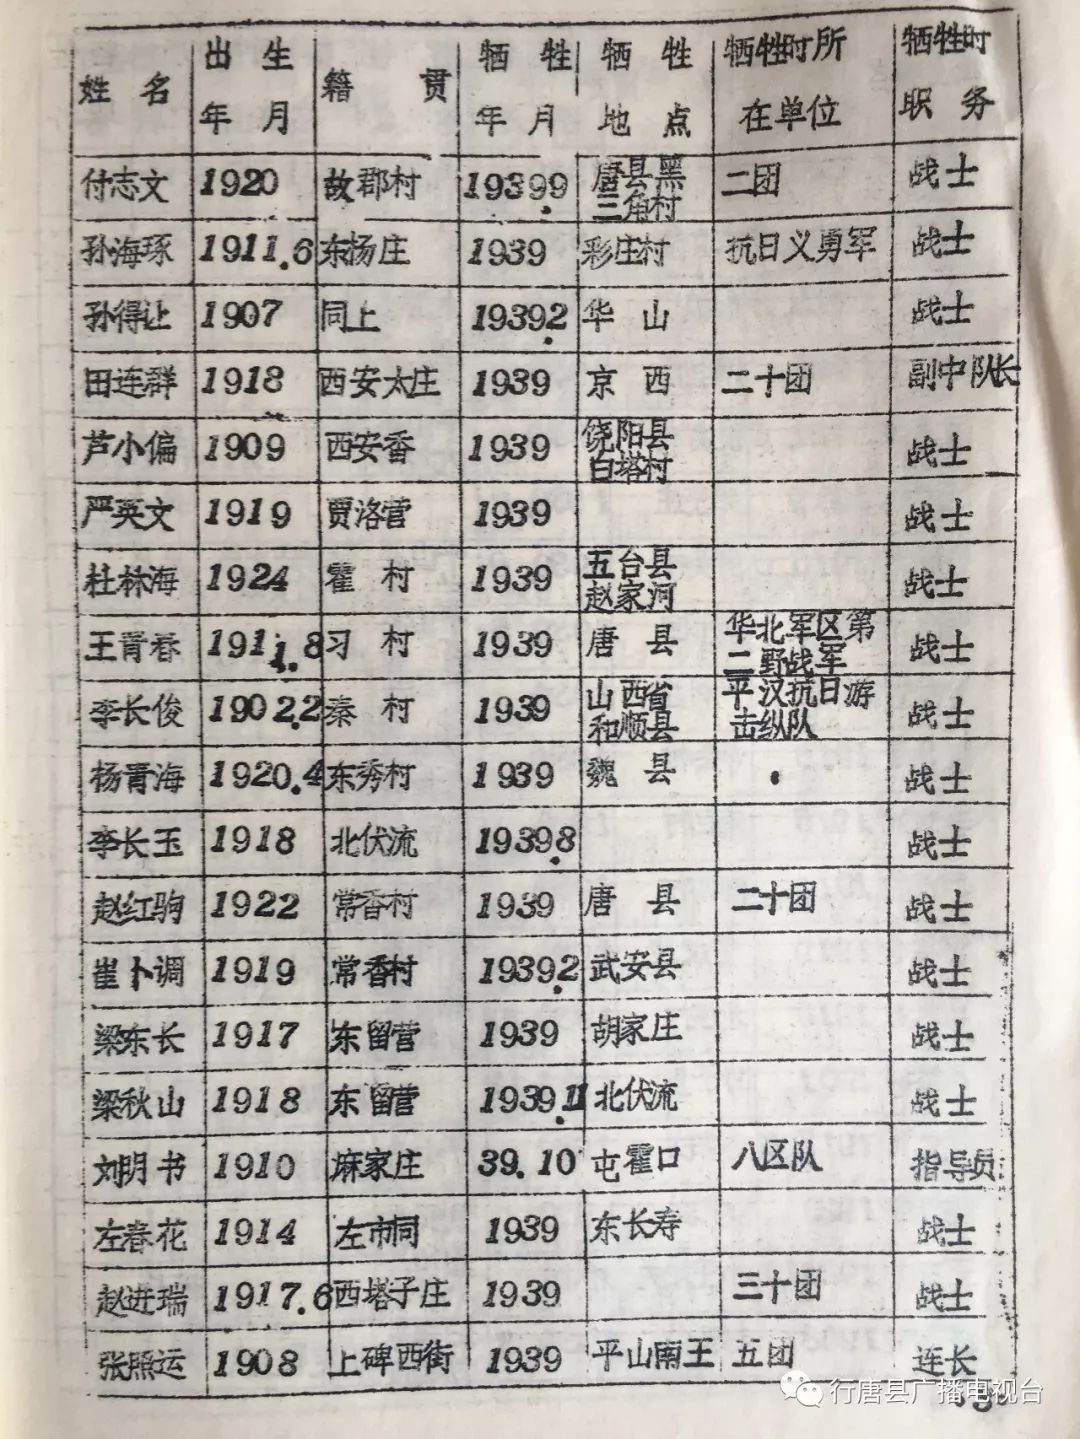 珍贵资料行唐县抗日战争时期烈士英名录